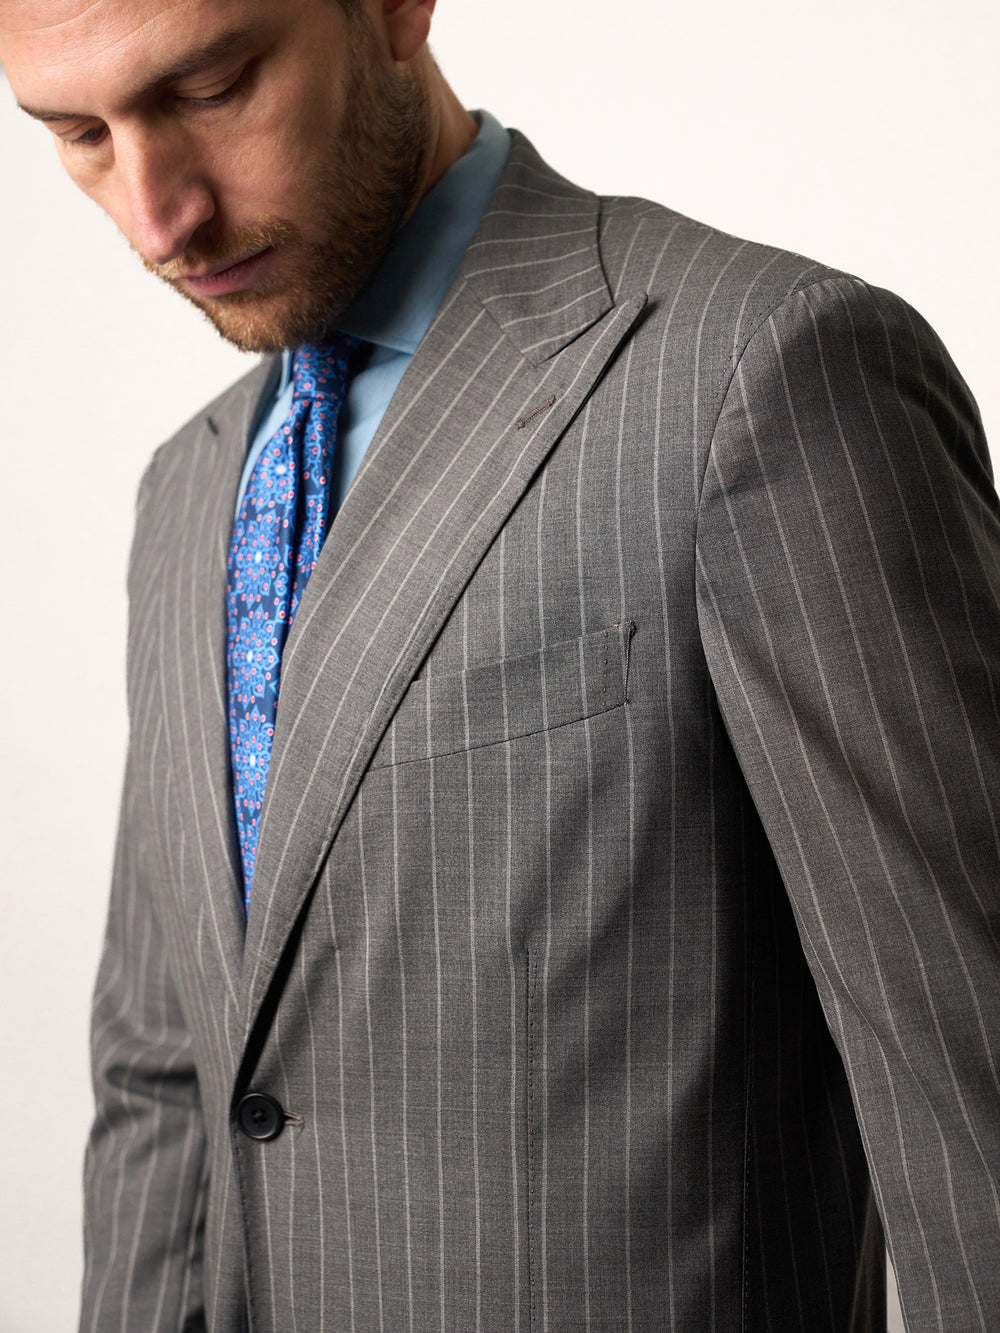 Medium Grey Pin Striped Super 160's Suit